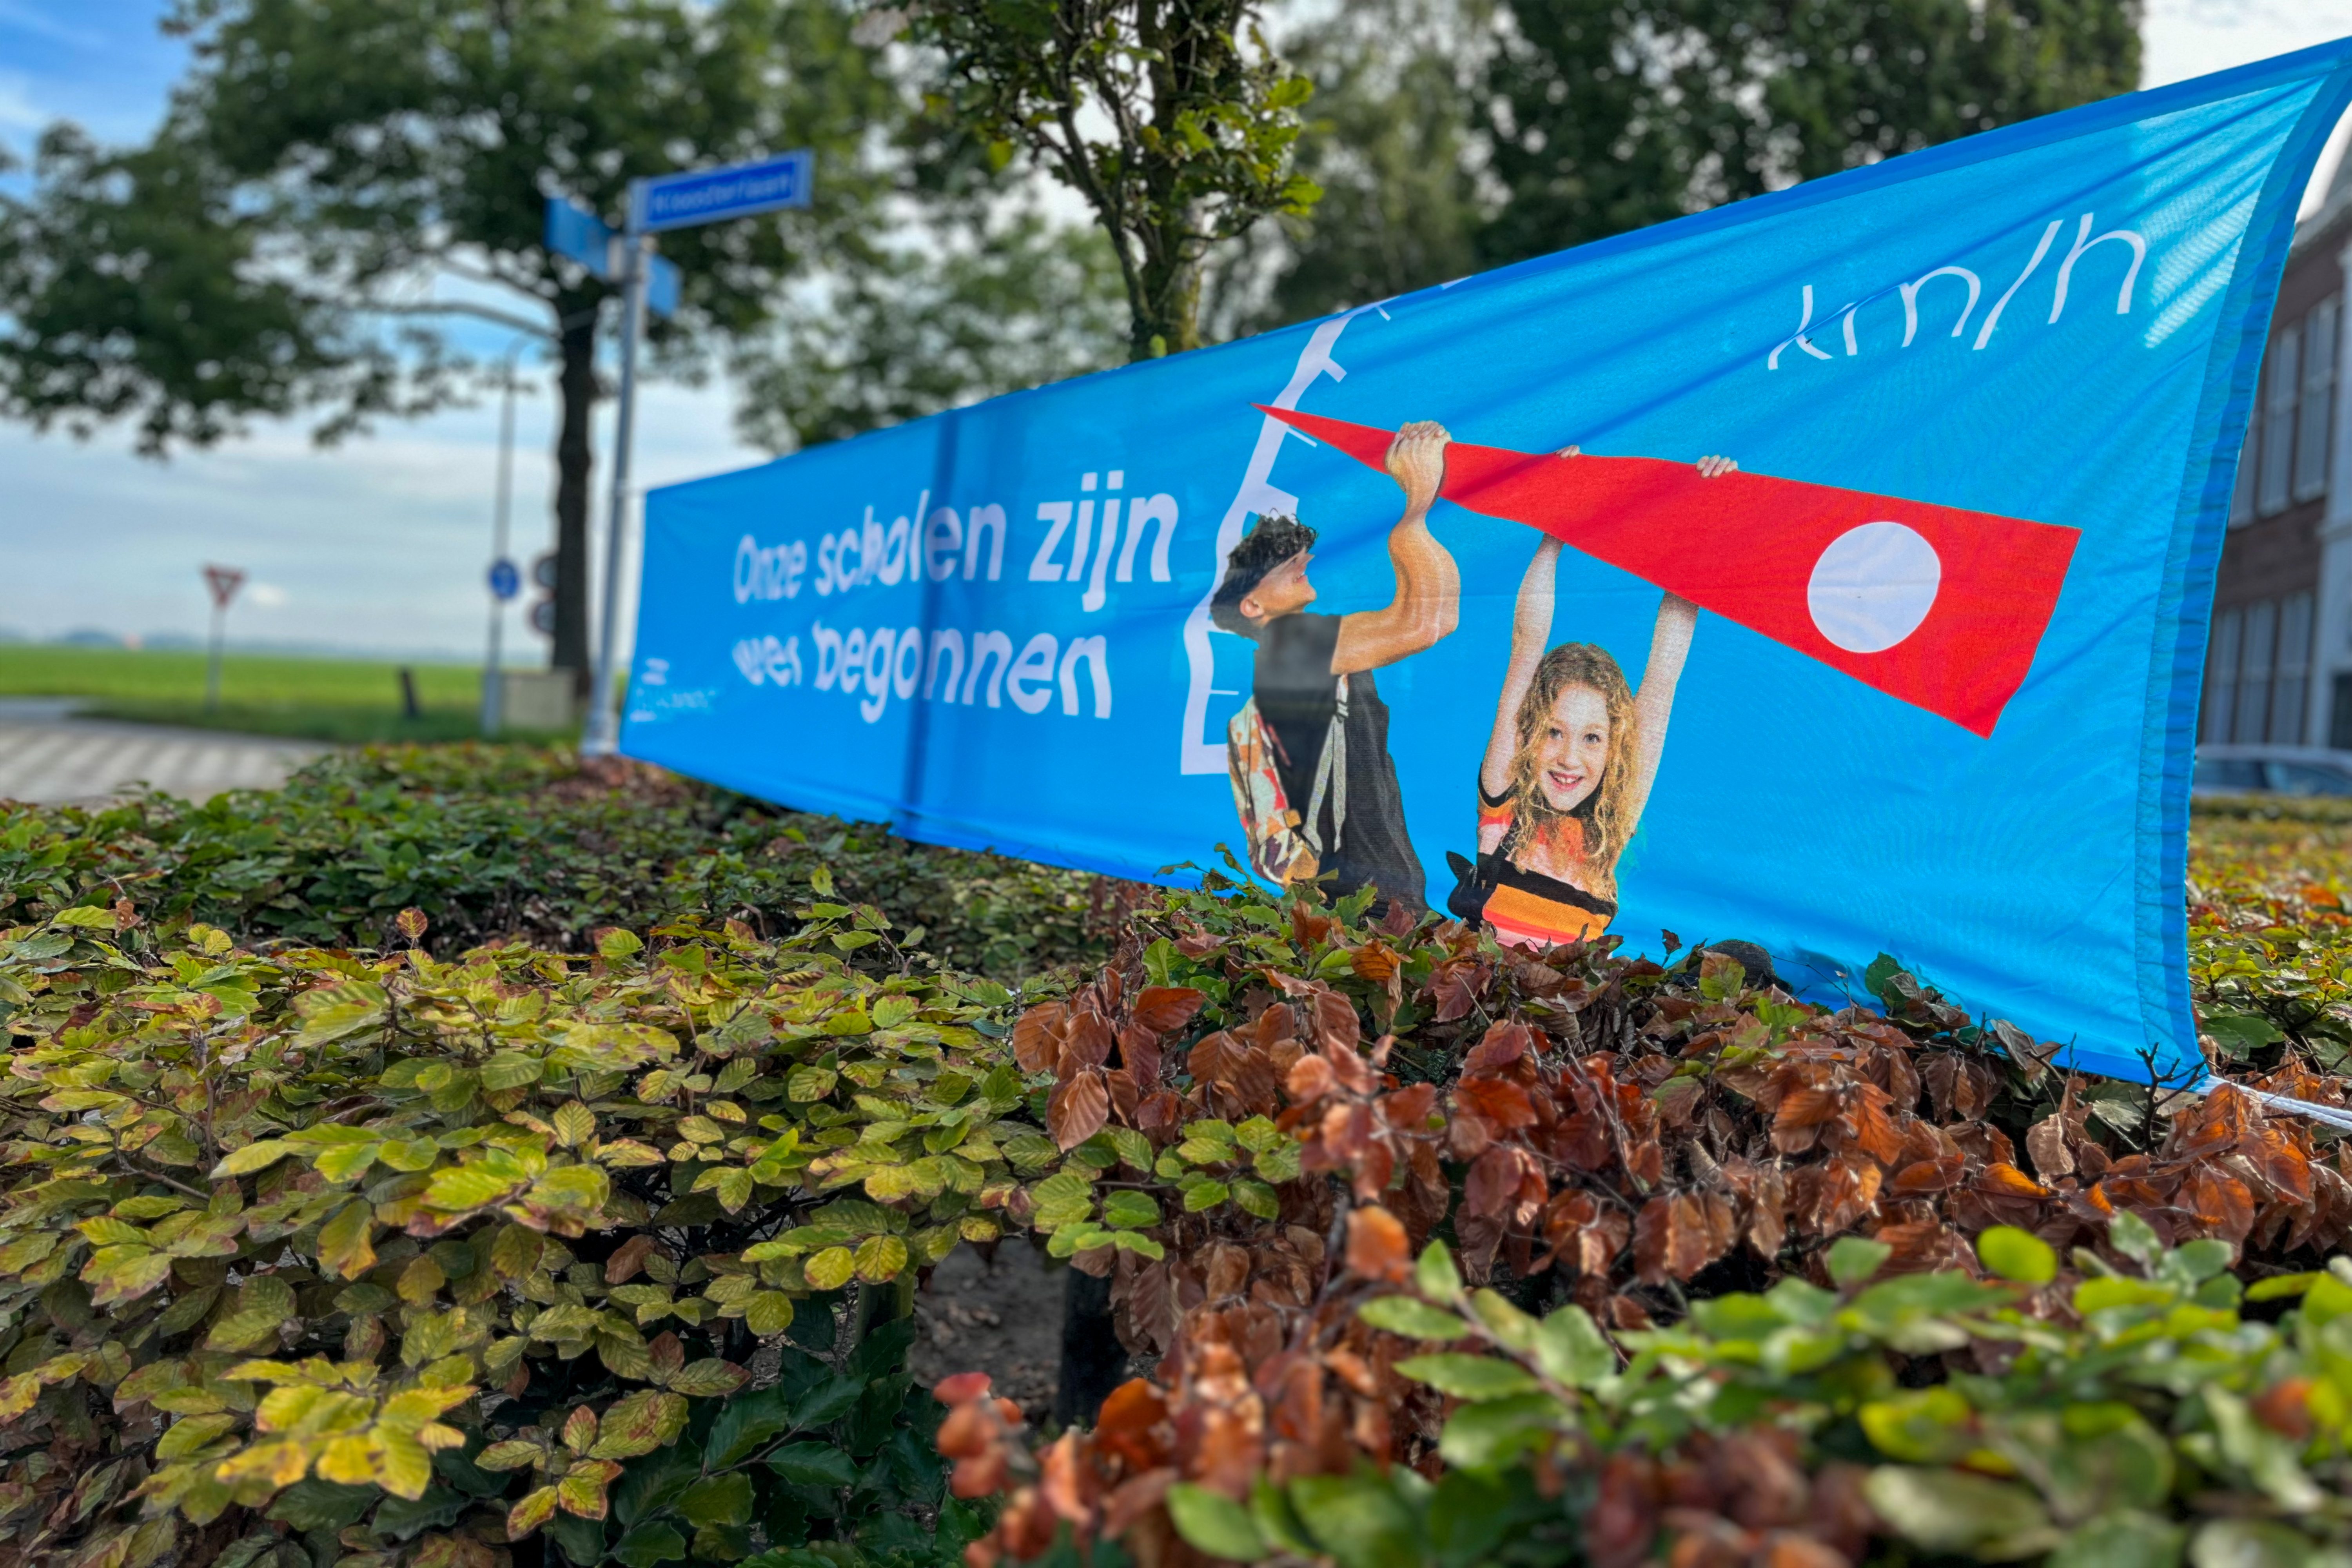 Onze scholen zijn weer begonnen, campaign Veilig Verkeer Nederland